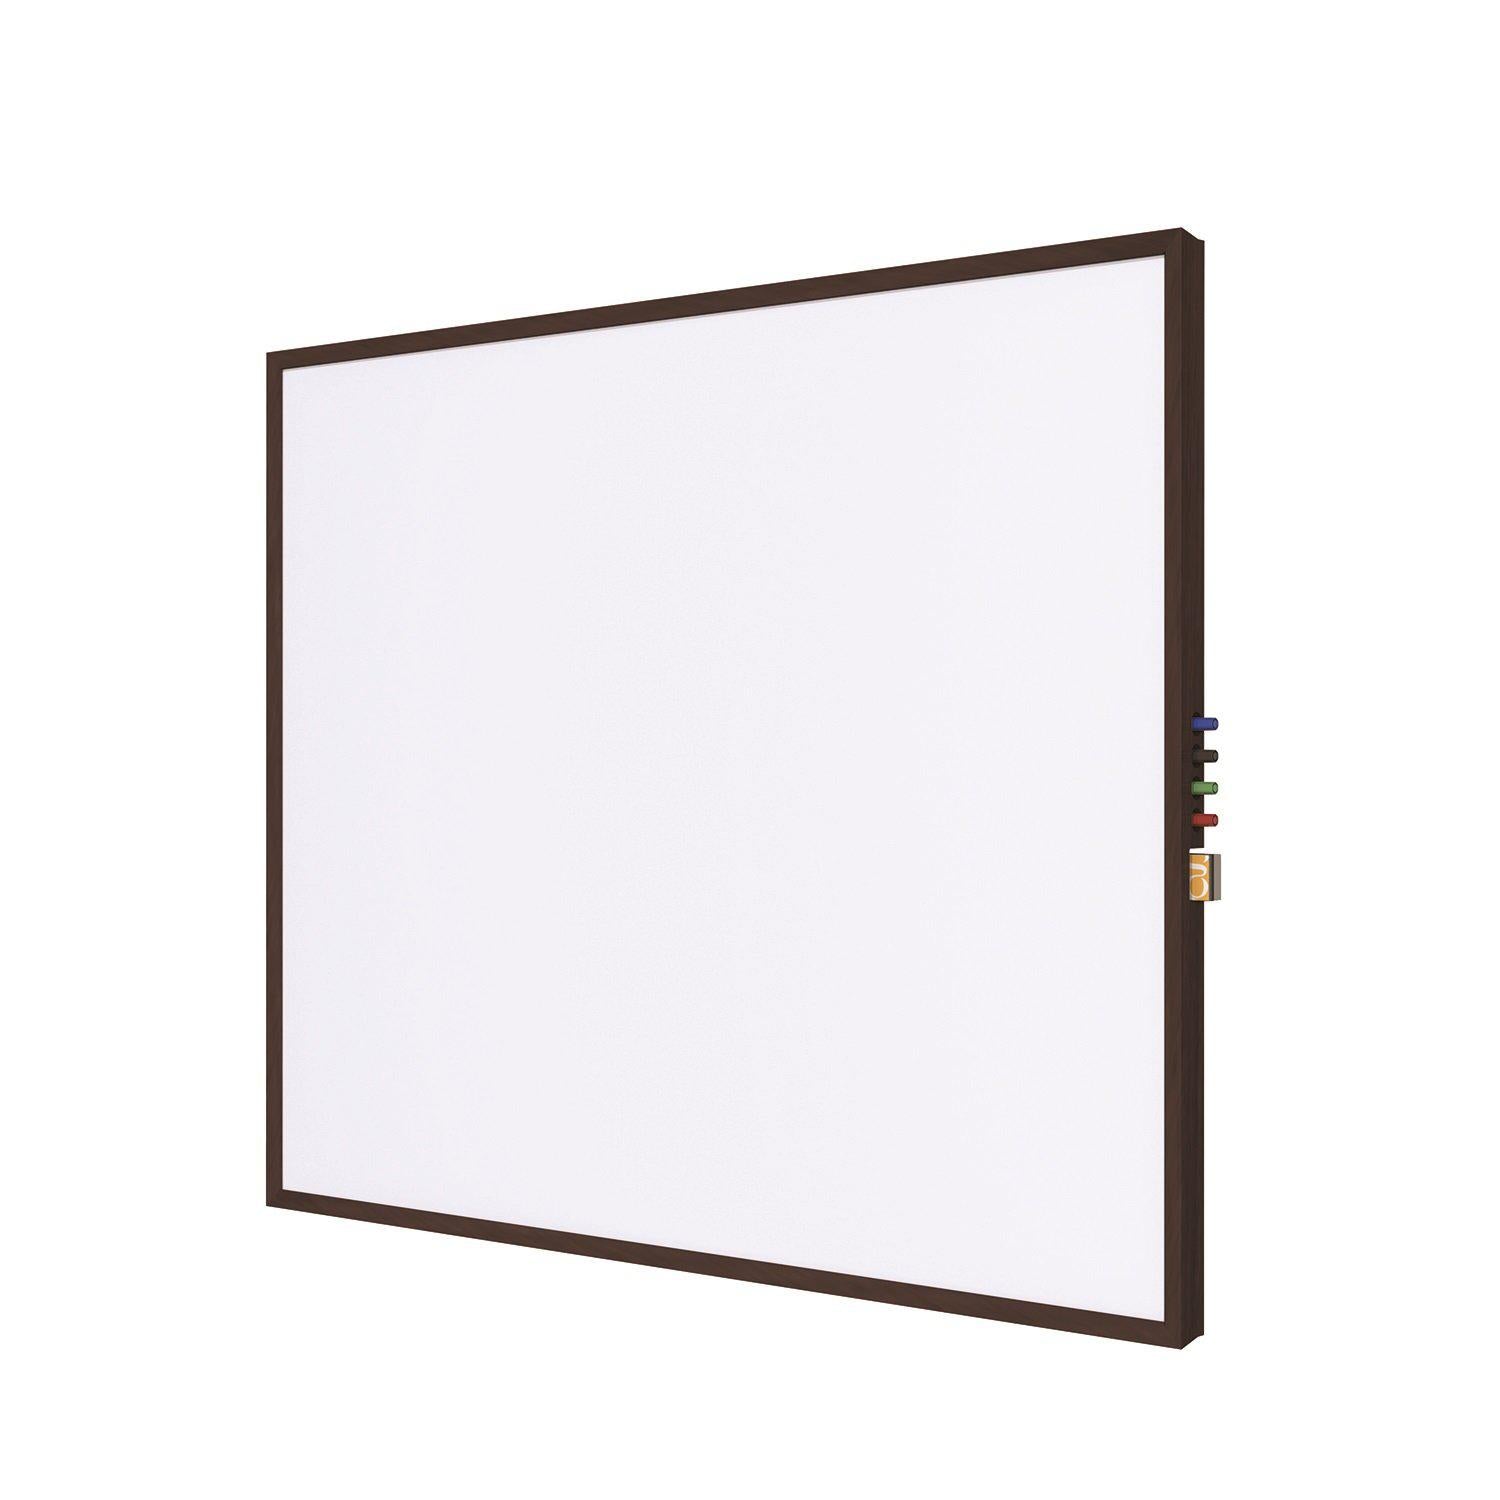 Impression Wood Framed Magnetic Porcelain Whiteboard, 4' H x 6' W